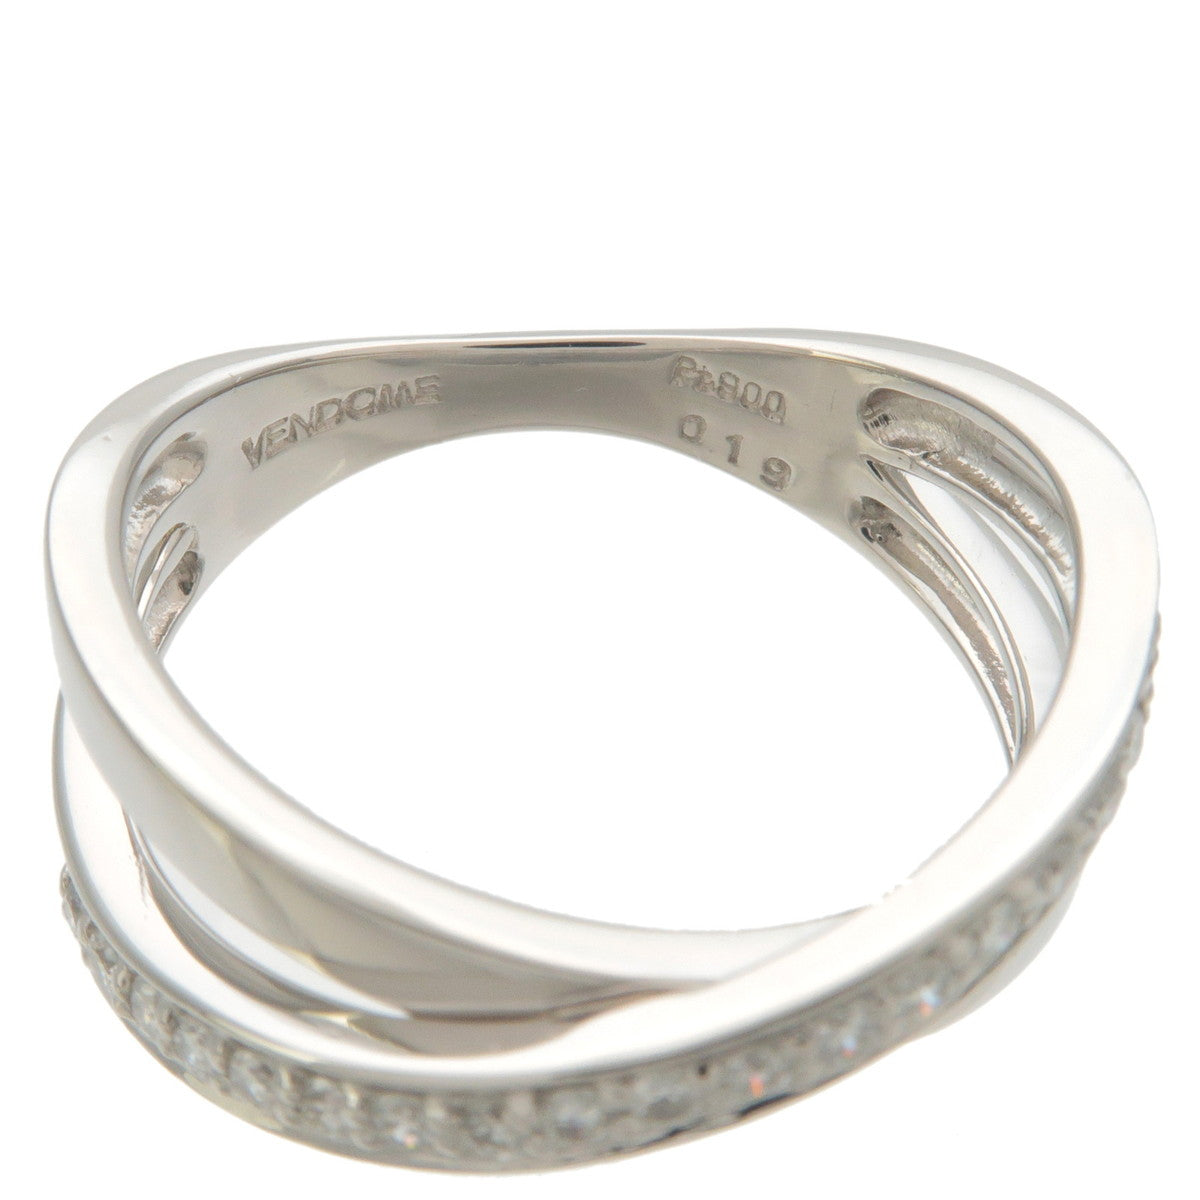 VENDOME AOYAMA Diamond Ring 0.19ct Platinum US5.5 HK12 EU50.5